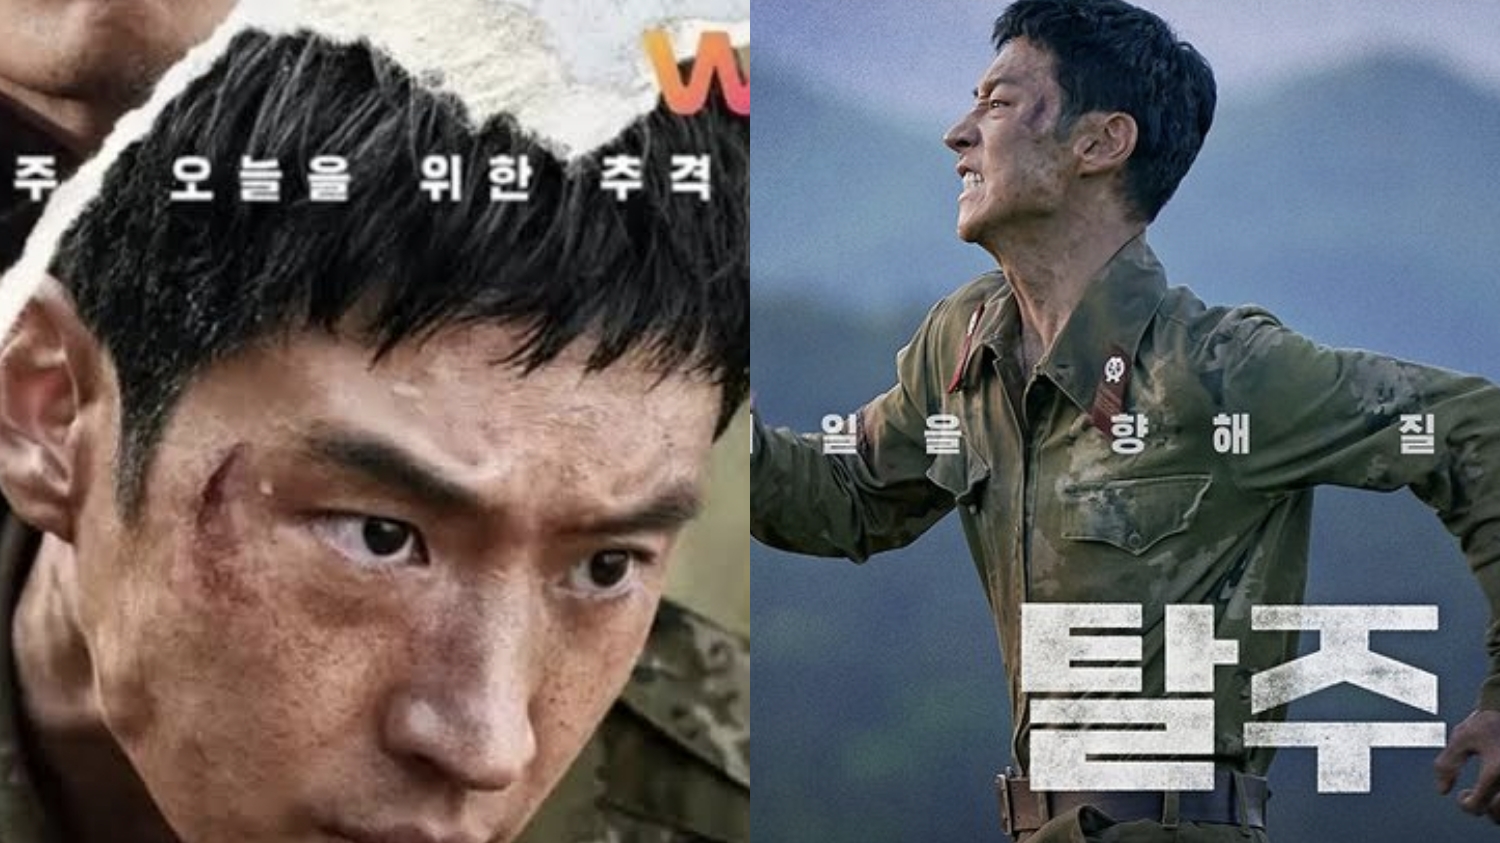 Dibintangi Lee Je Hoon, Berikut Sinopsis Film Korea Escape